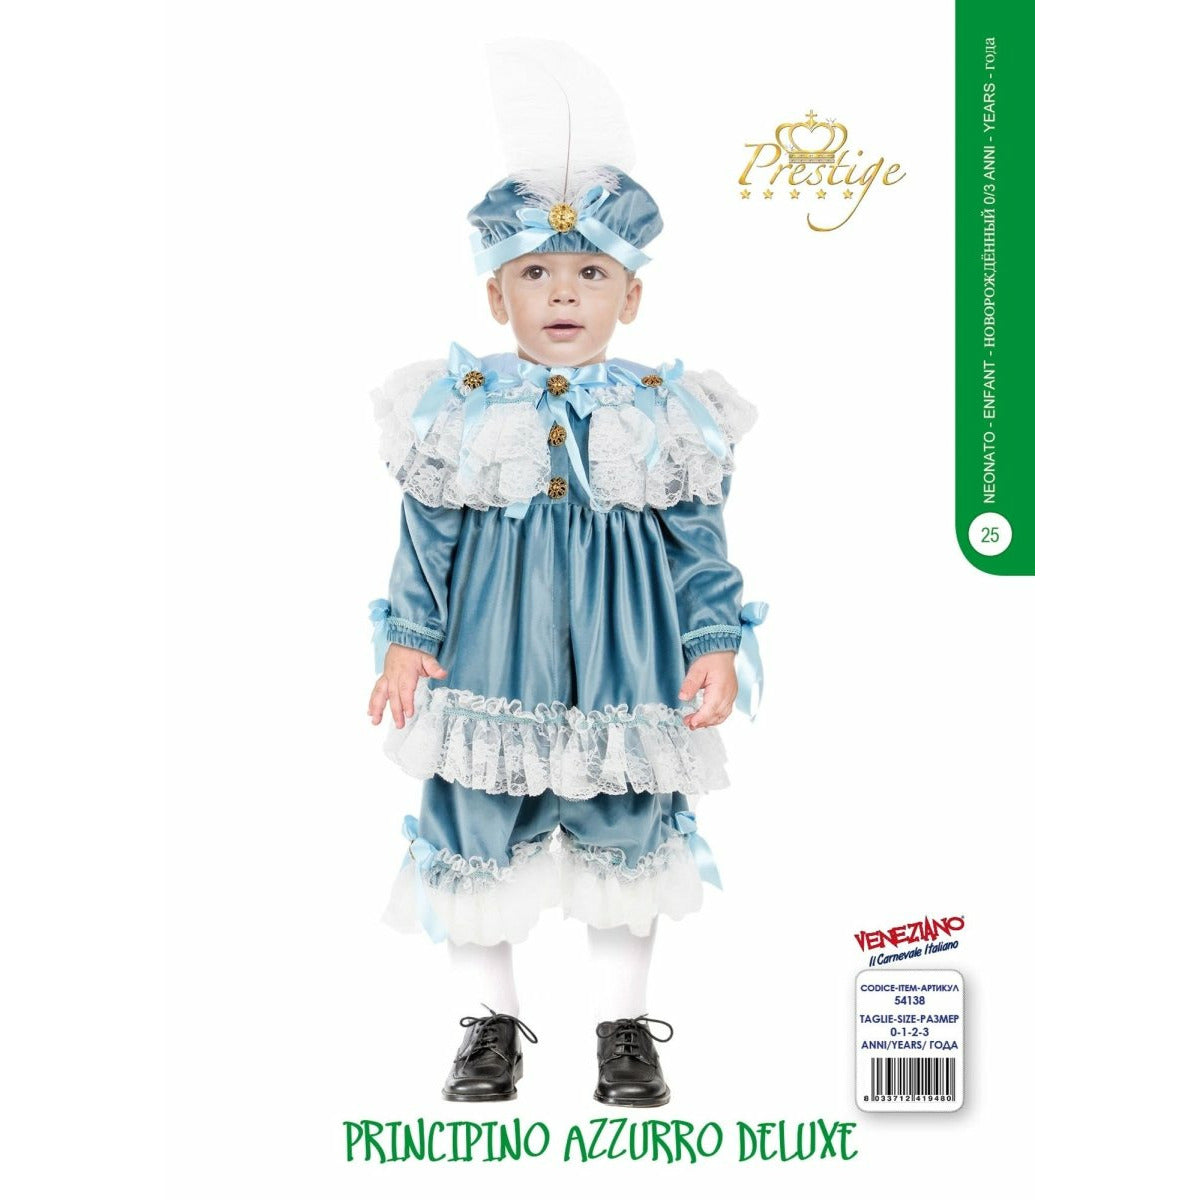 Principino Azzurro Deluxe - Mstore016 - Carnevale neonato - Veneziano